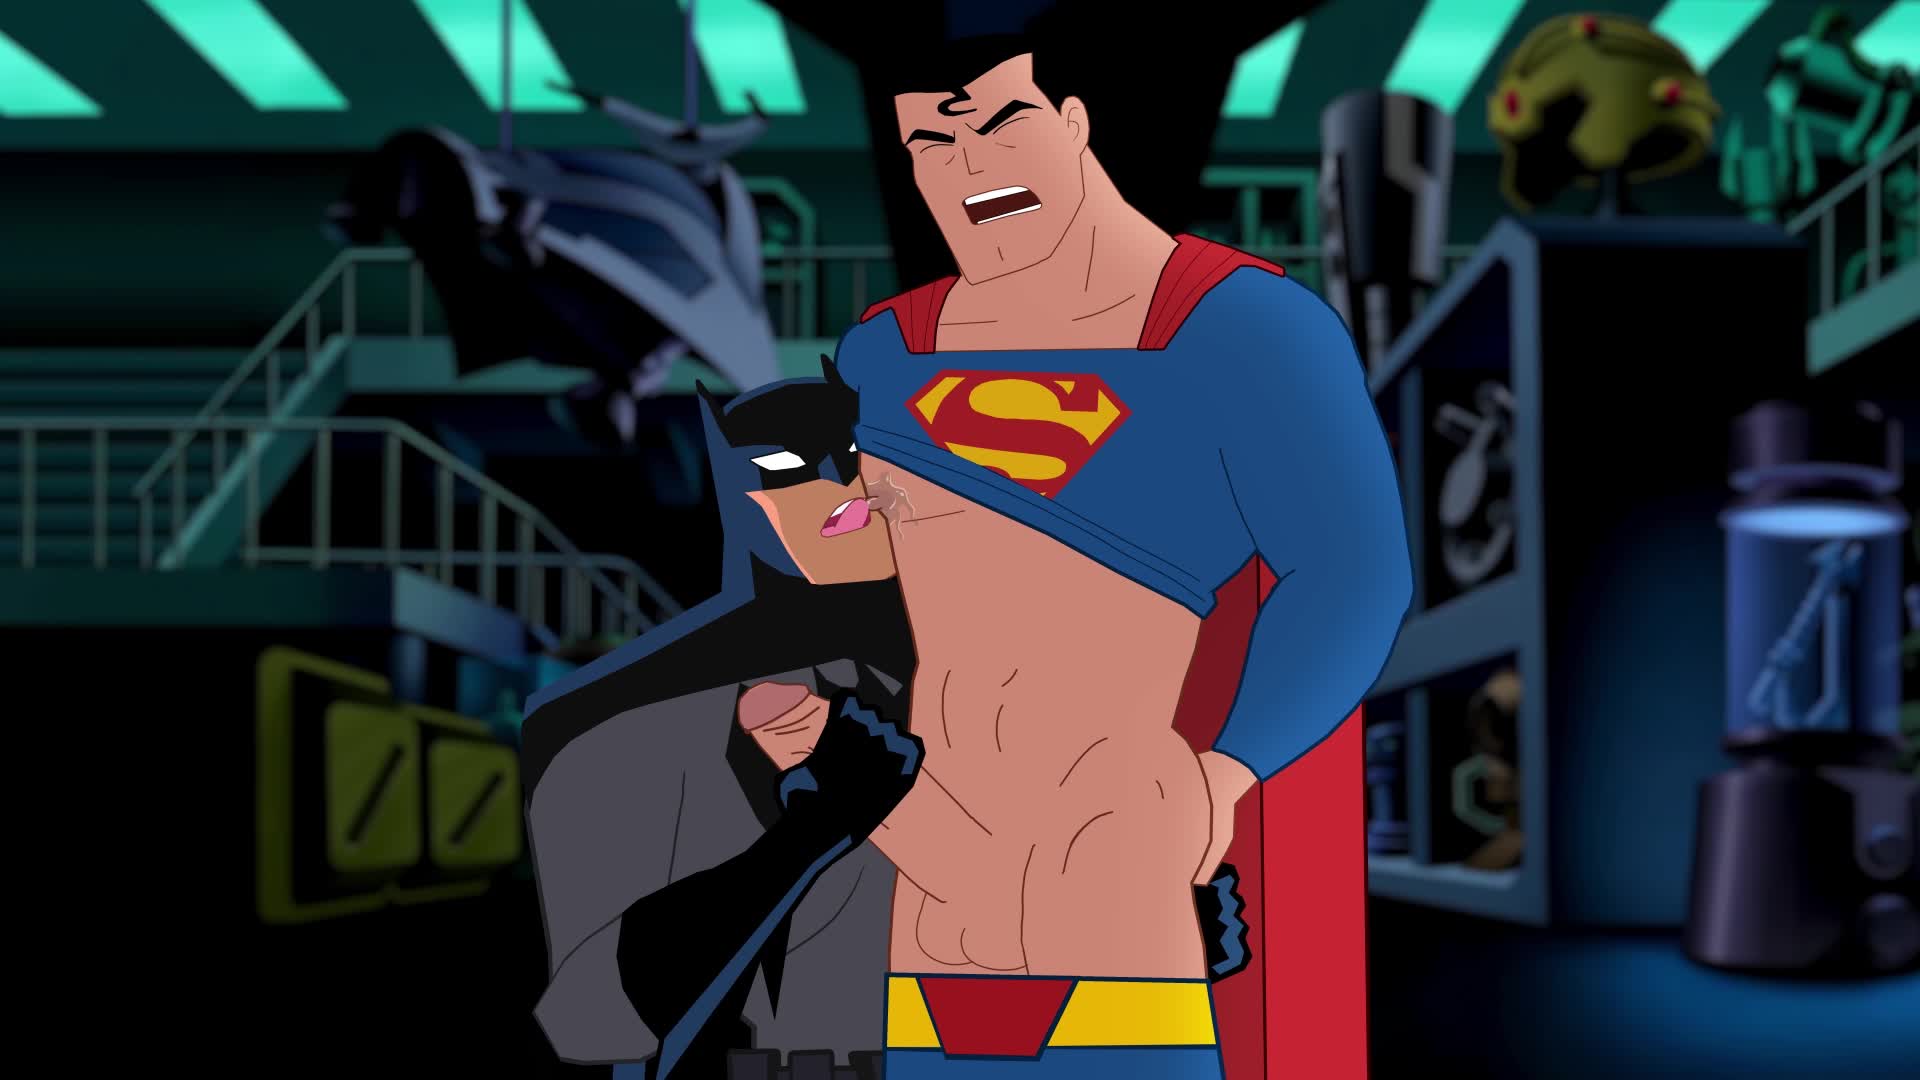 Batman superman gay porn